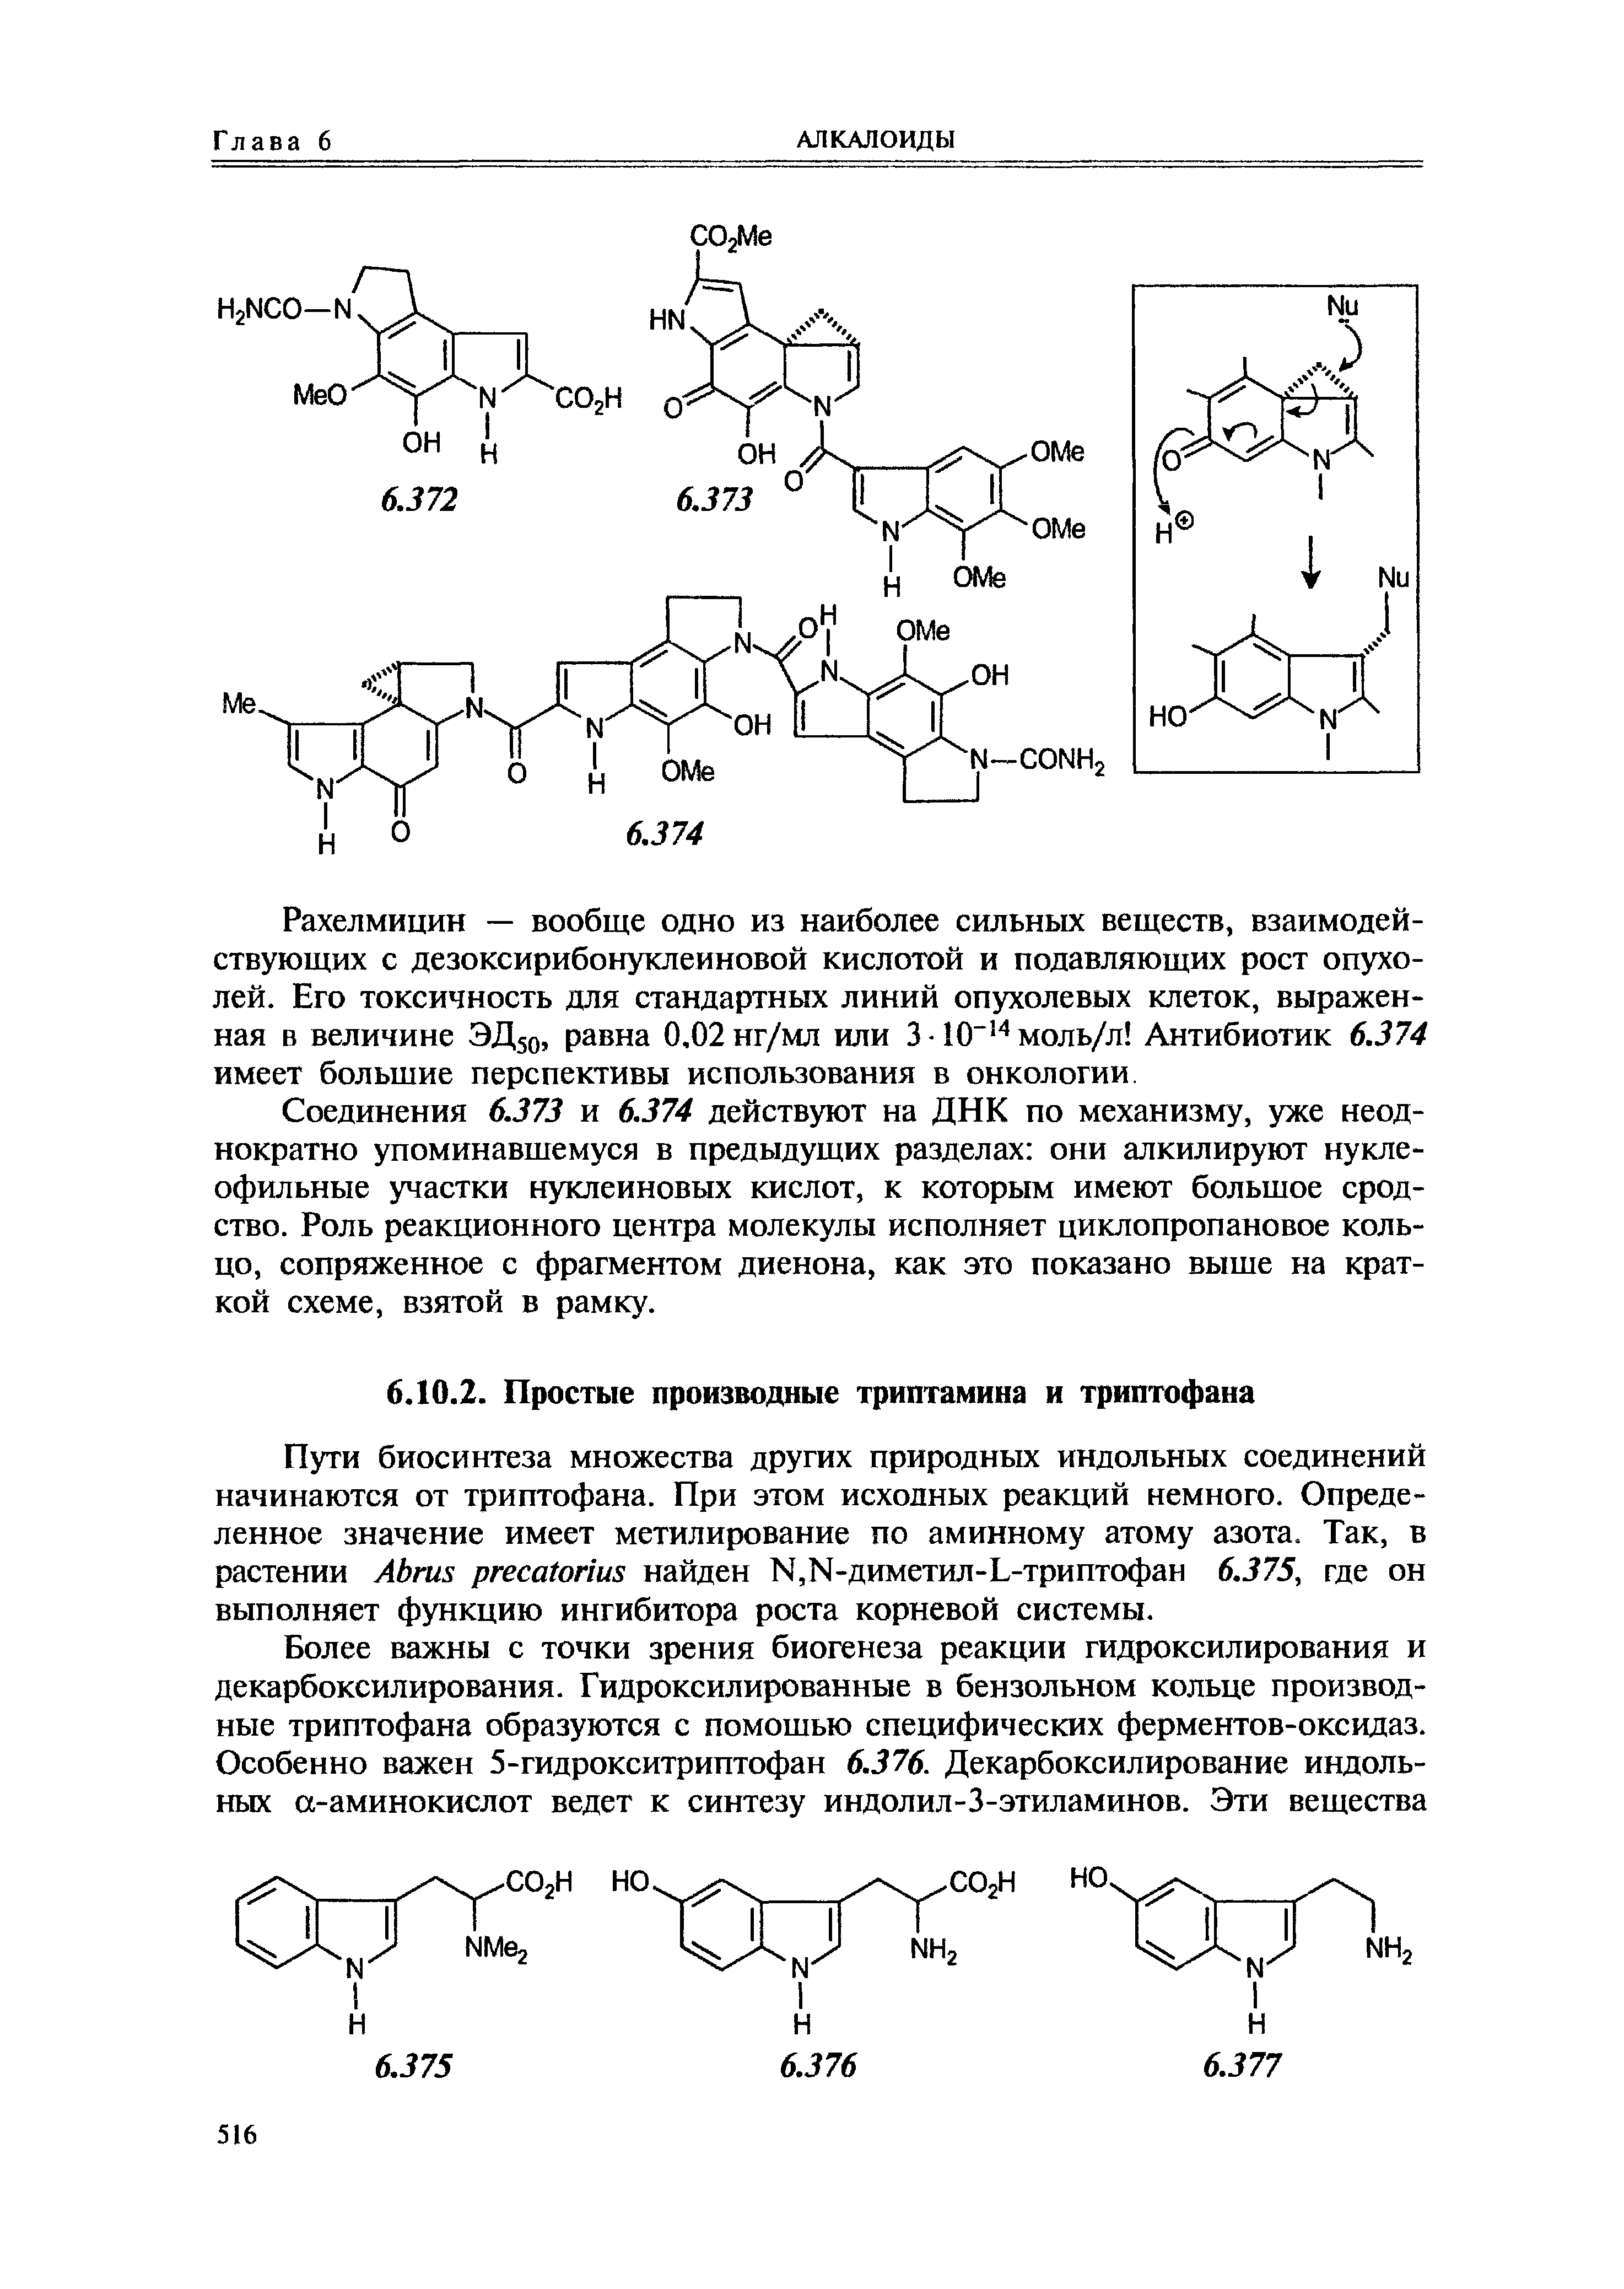 Индольные соединения — метаболиты тирозина и ДОФА - Справочник химика 21